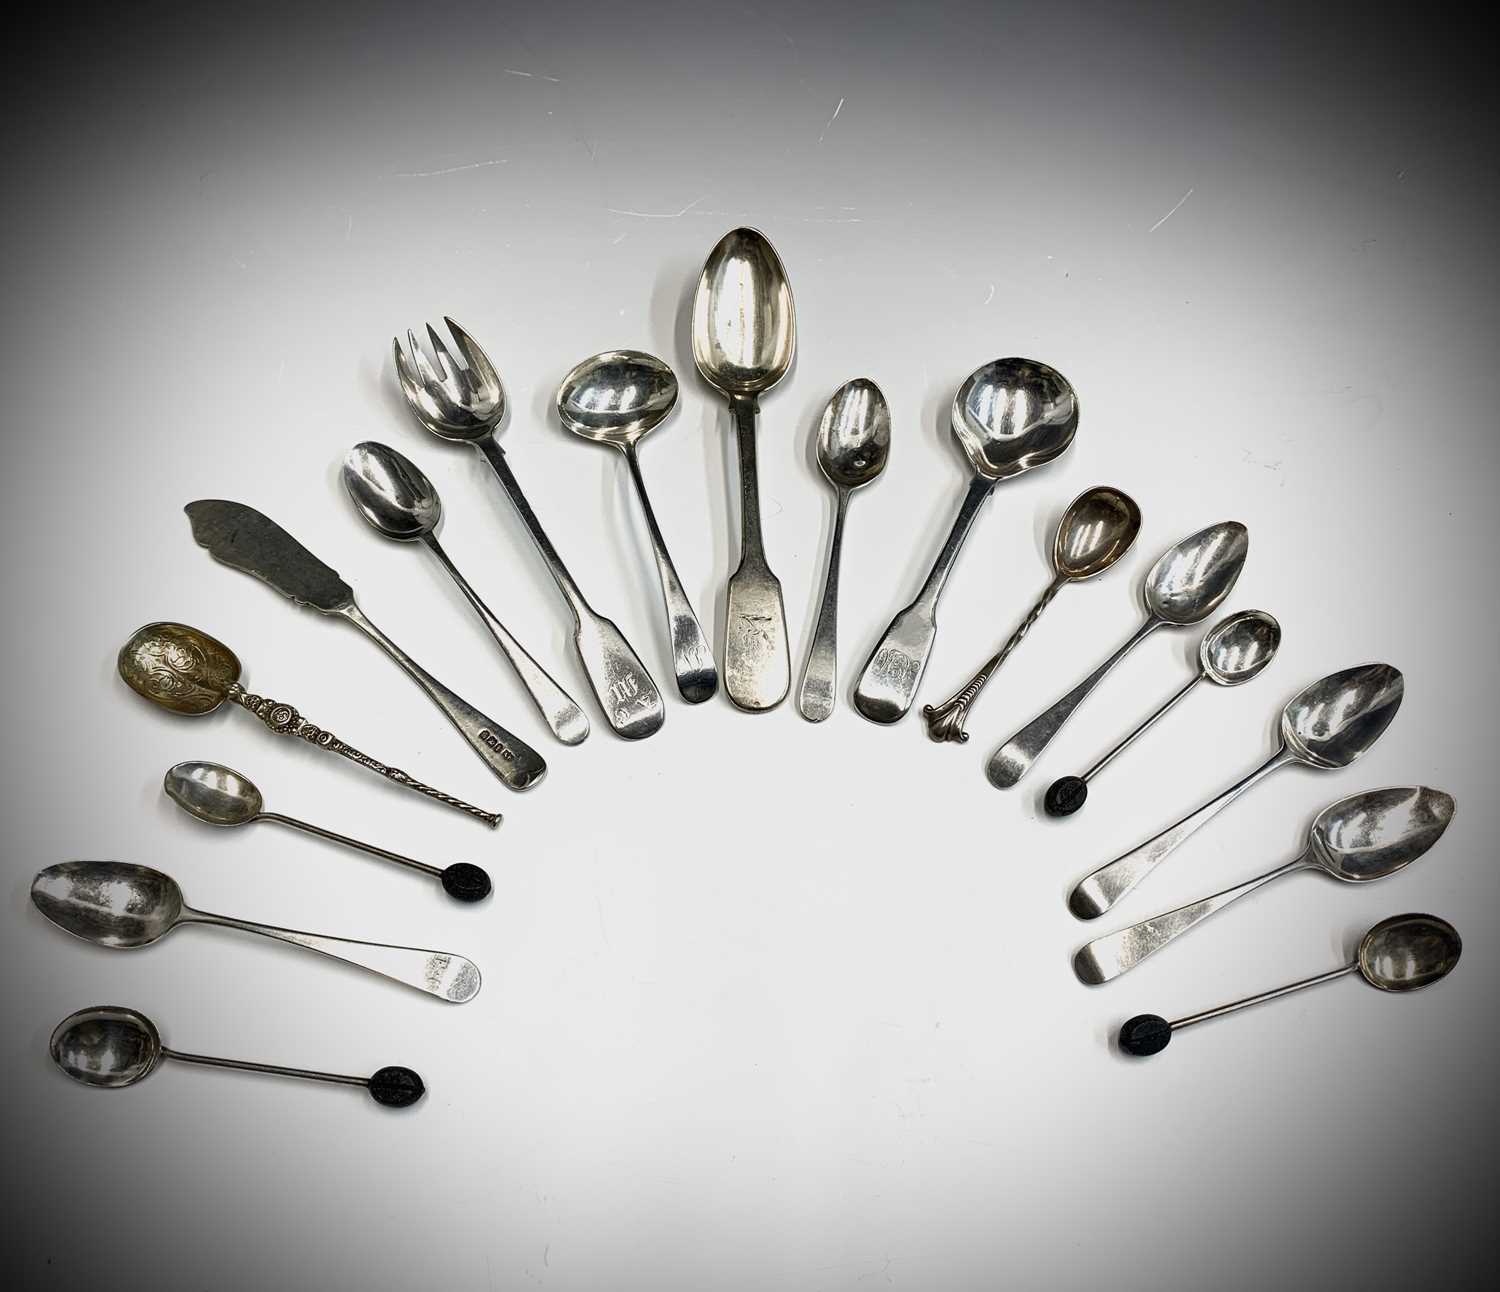 A silver dessert spoon by Hamilton Calcutta and other silver flatware 8.4oz